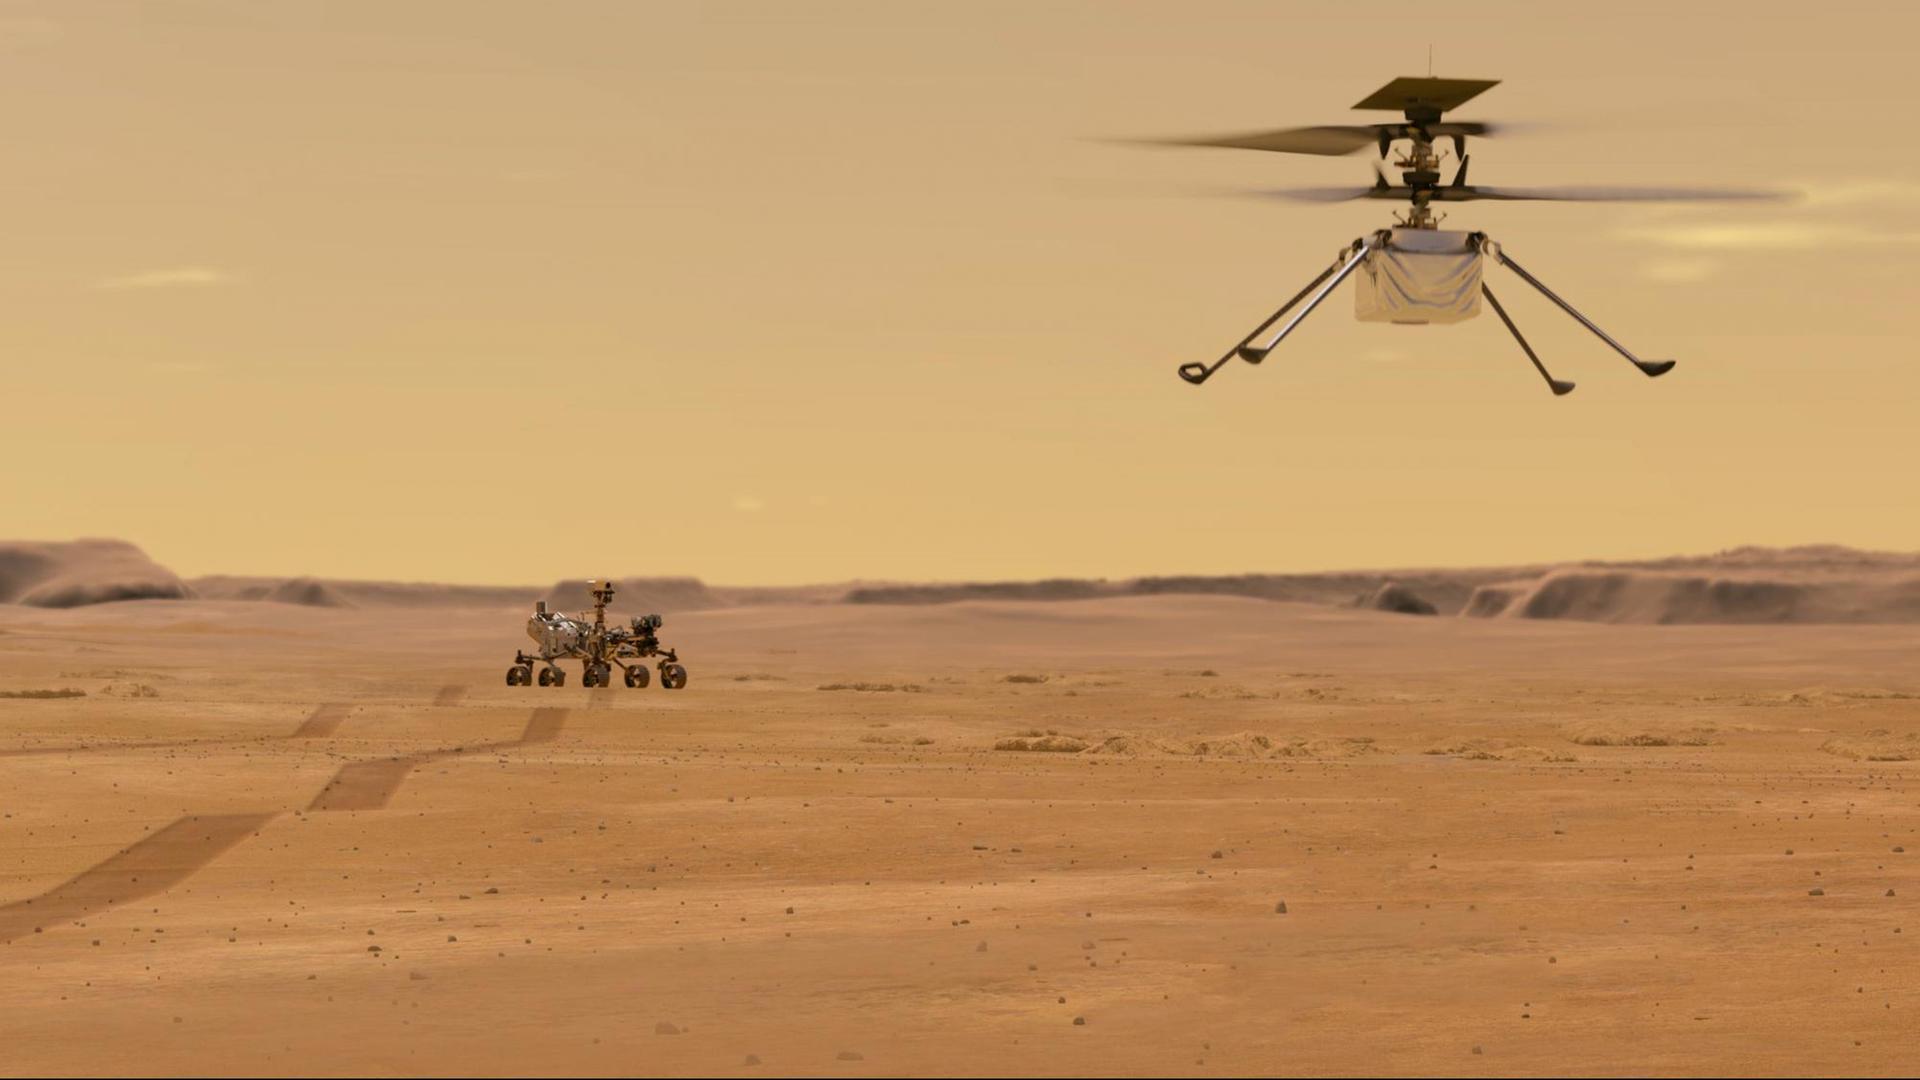 Der Mars-Rover im Hintergrund und der Mini-Hubschrauber.